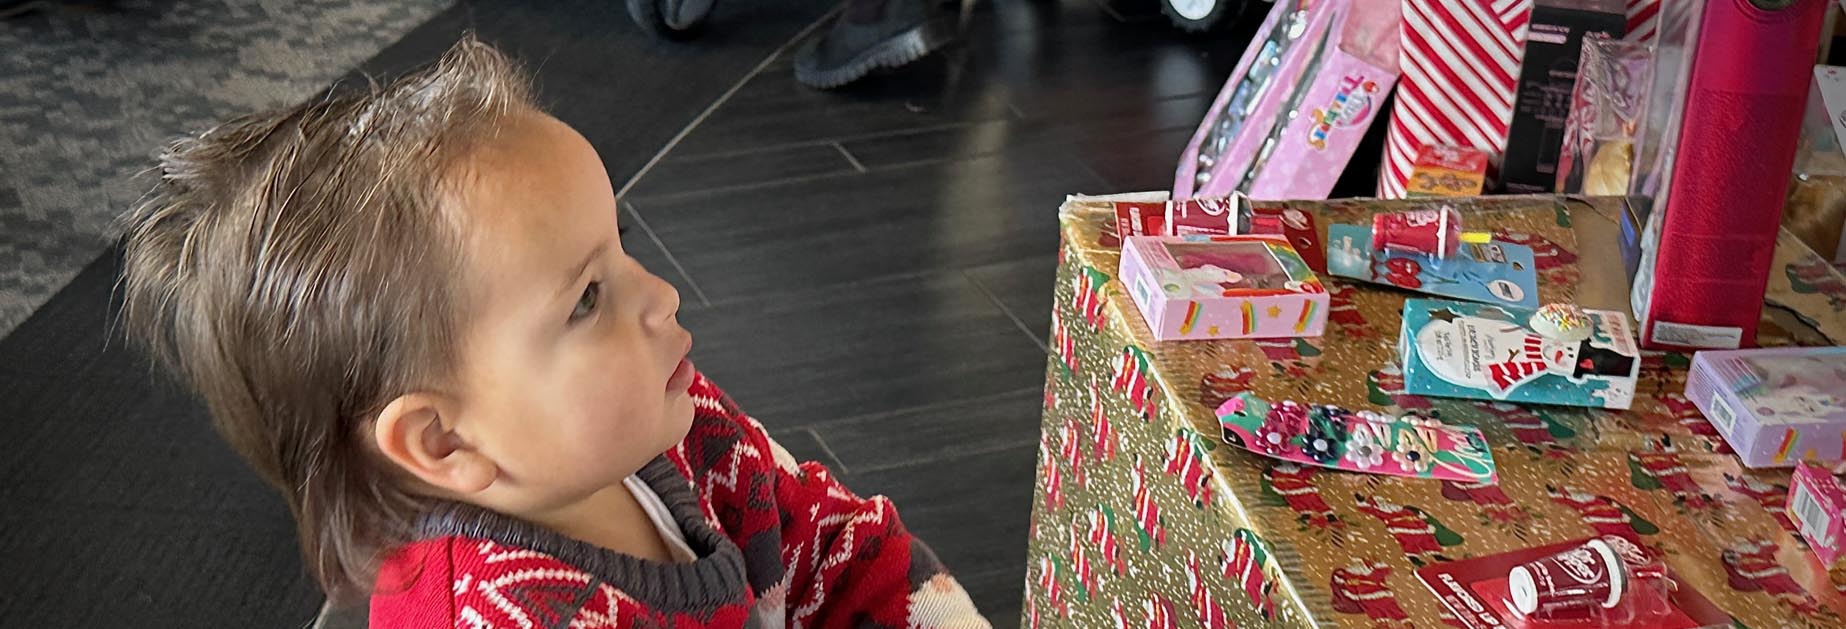 包装されたプレゼントの隣にいる幼い子供